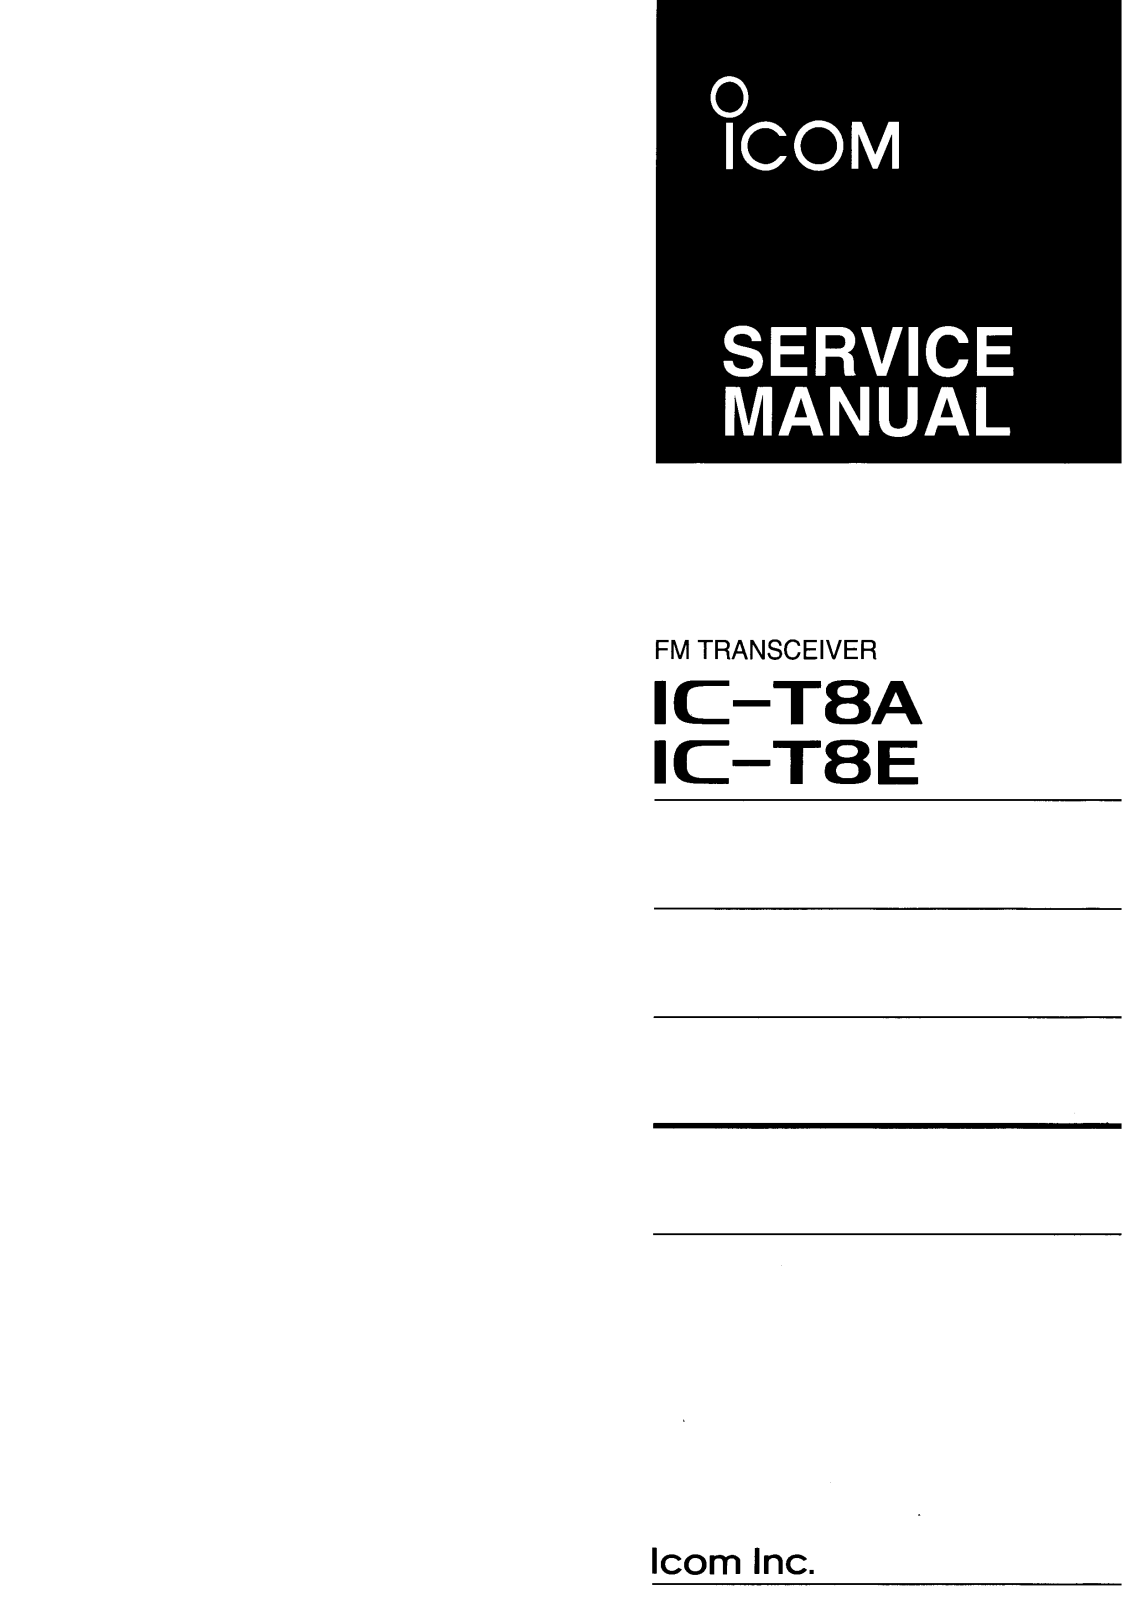 Icom IC-T8A, IC-T8E Manual